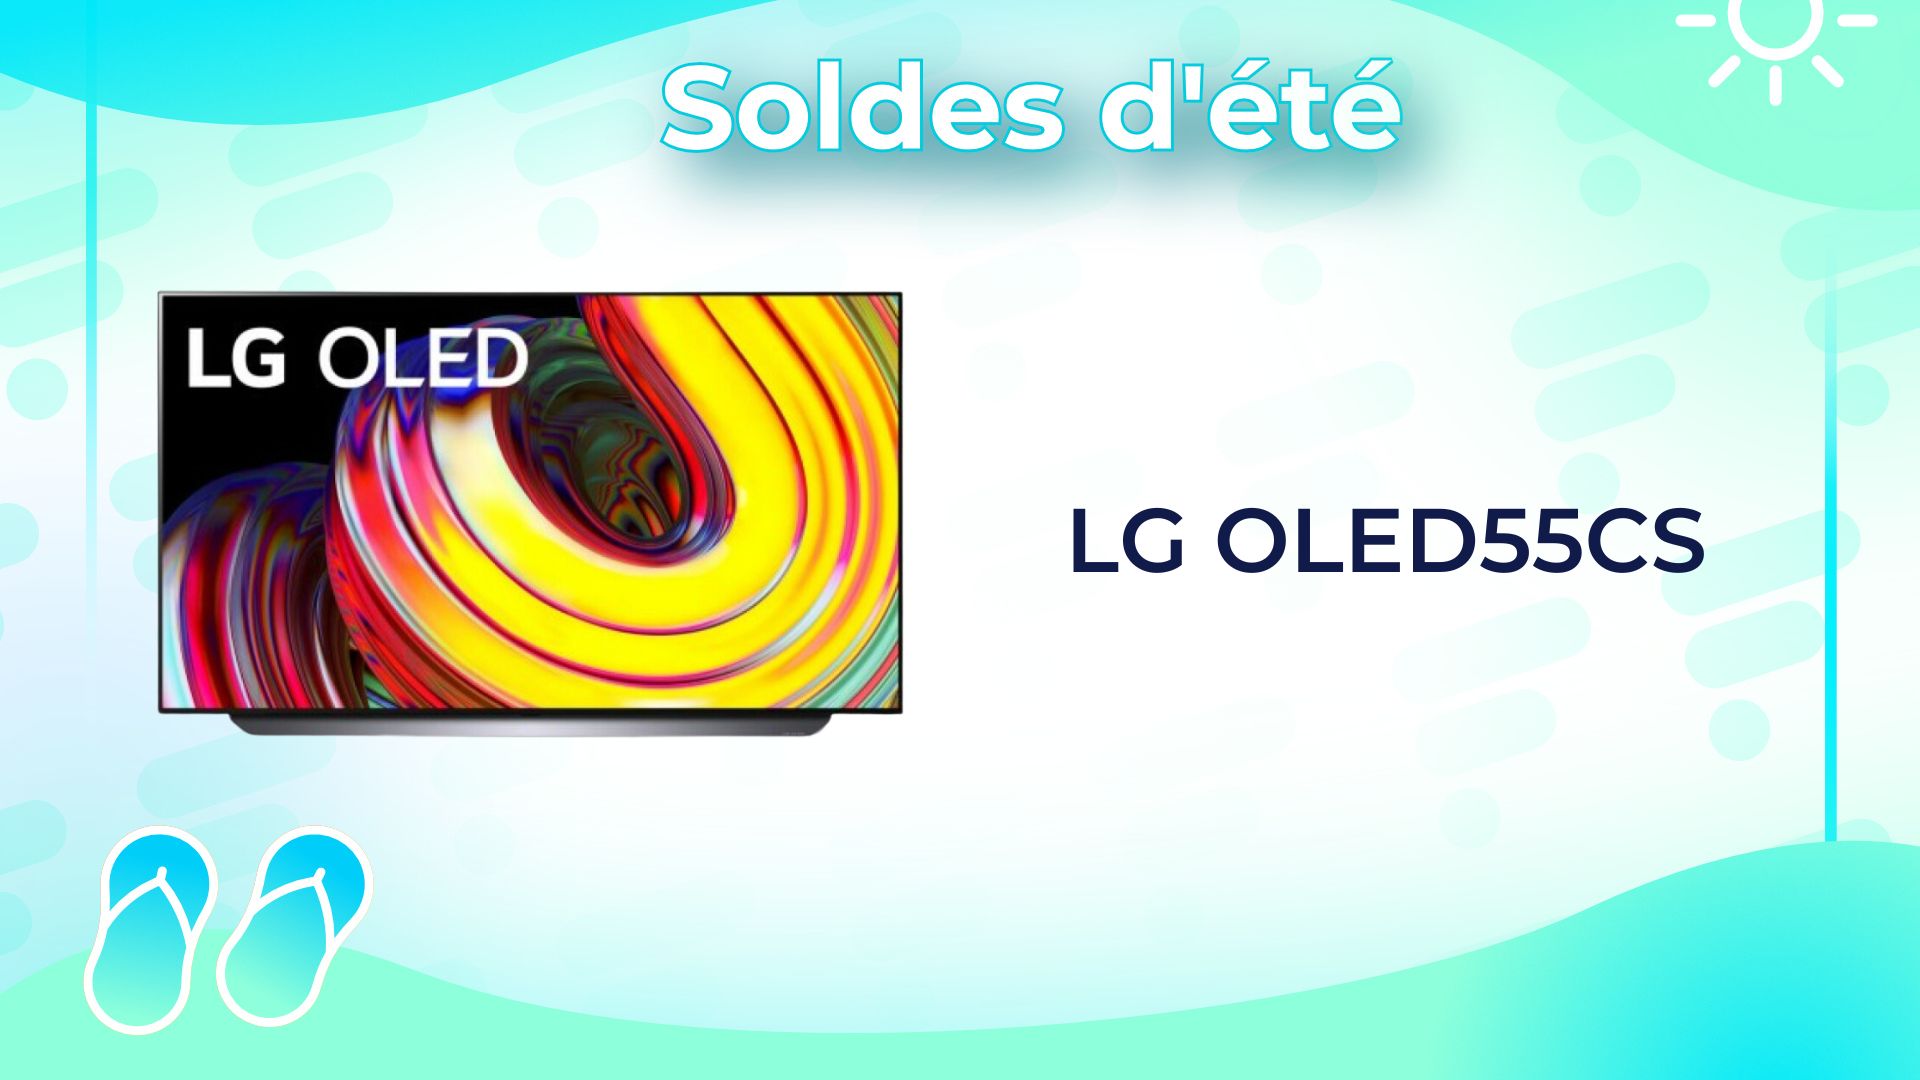 LG CS : ce super TV OLED 55 est à un prix bien plus avantageux